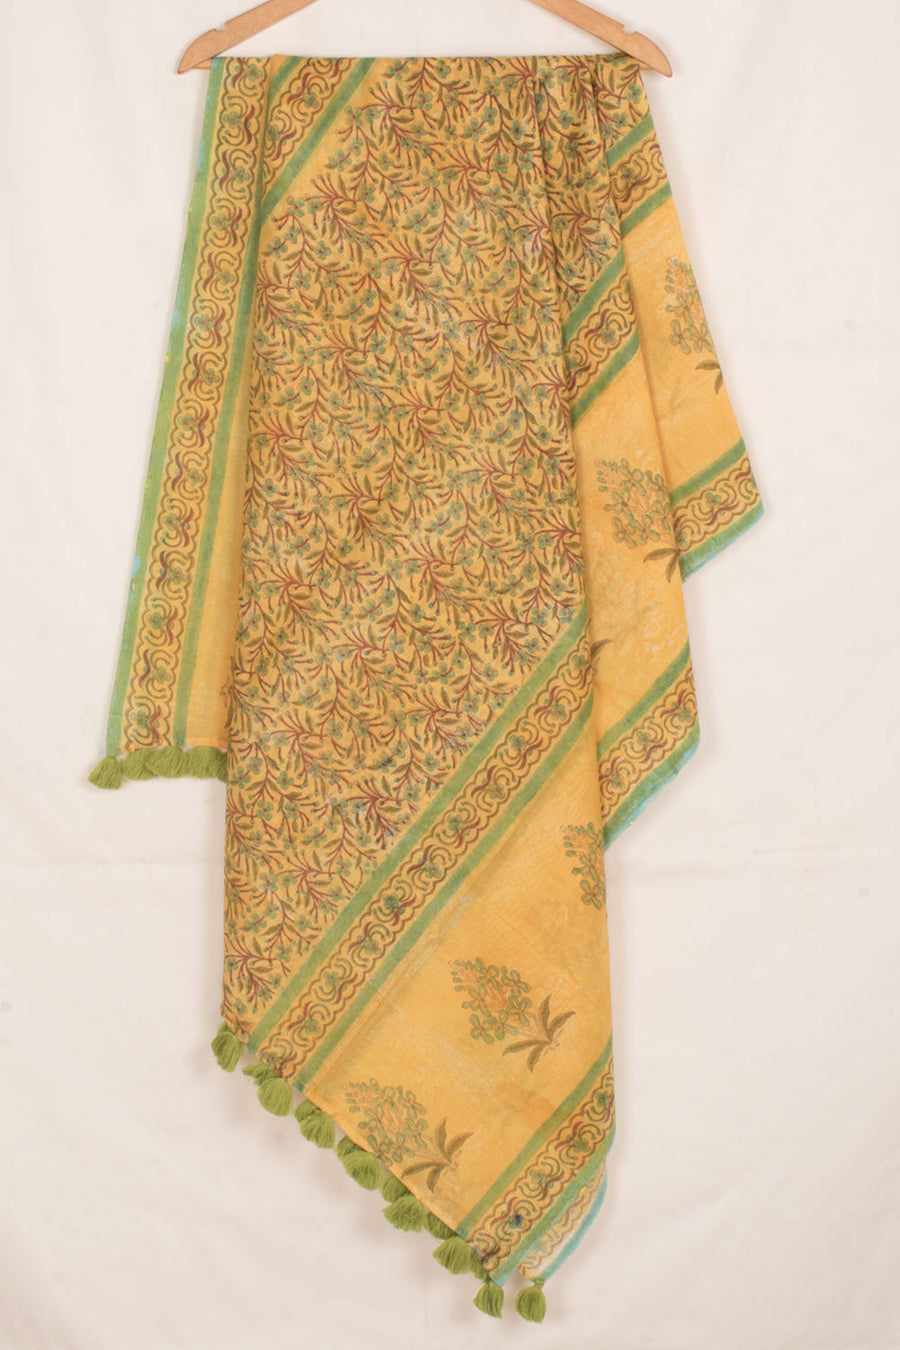 Hand Block Printed Chanderi Silk Cotton Dupatta with Floral Design